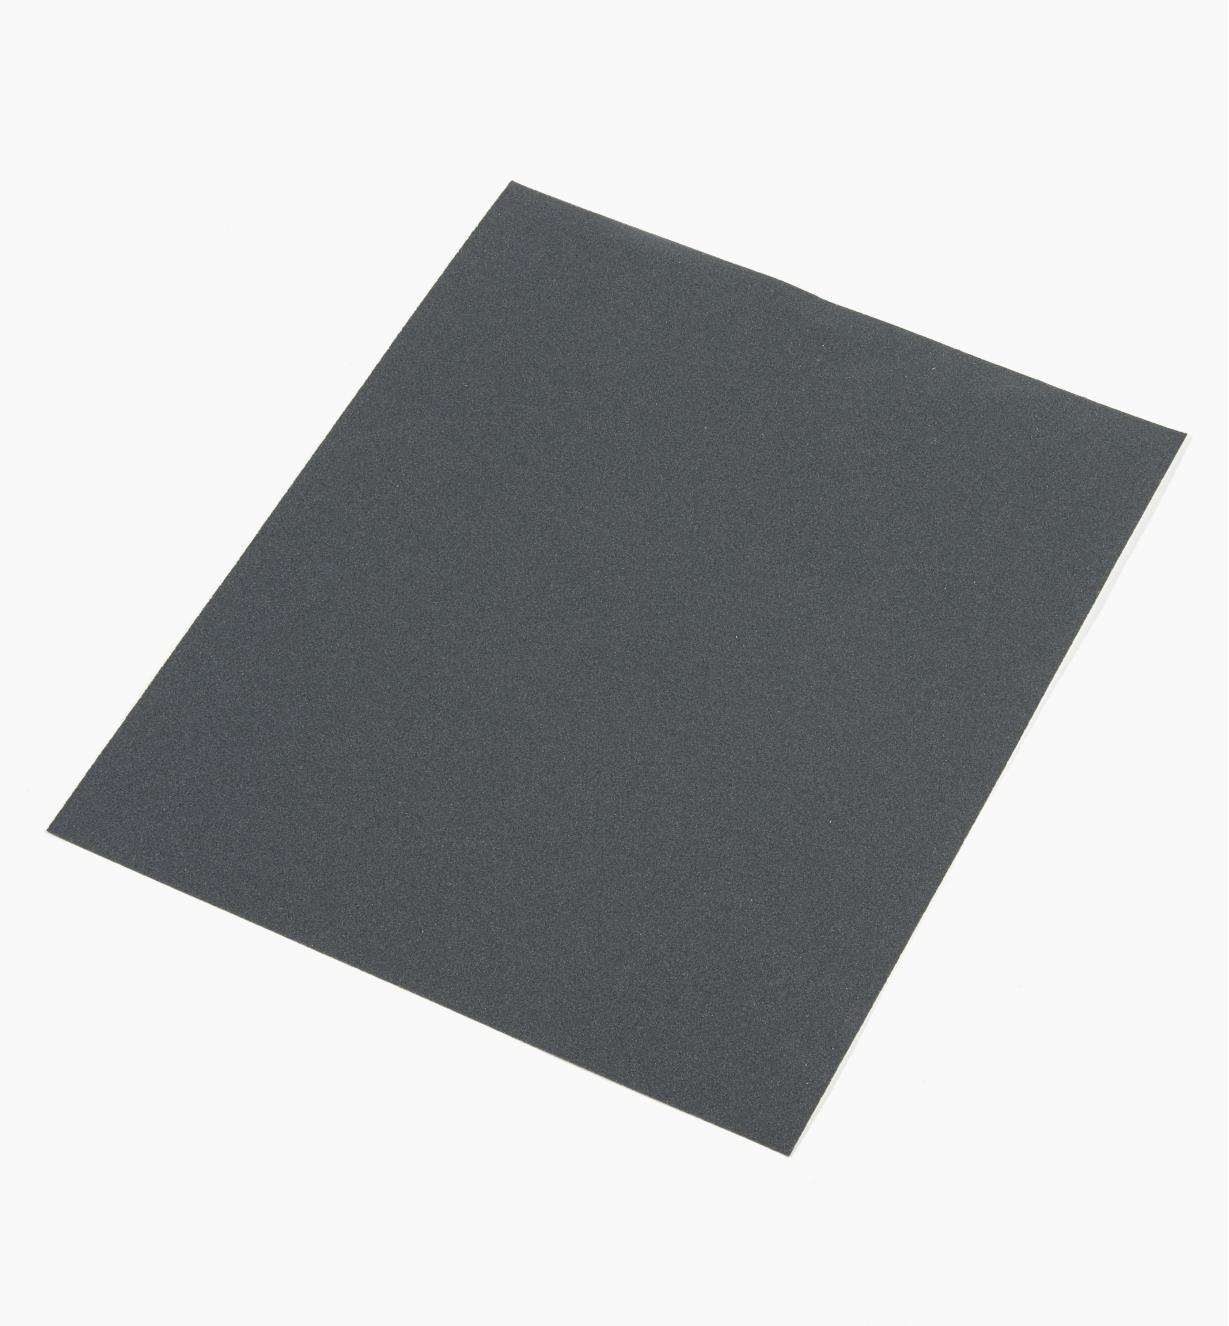 08K0175 - Papier abrasif pour ponçage à sec ou humide Mirka, grain 180, l'unité